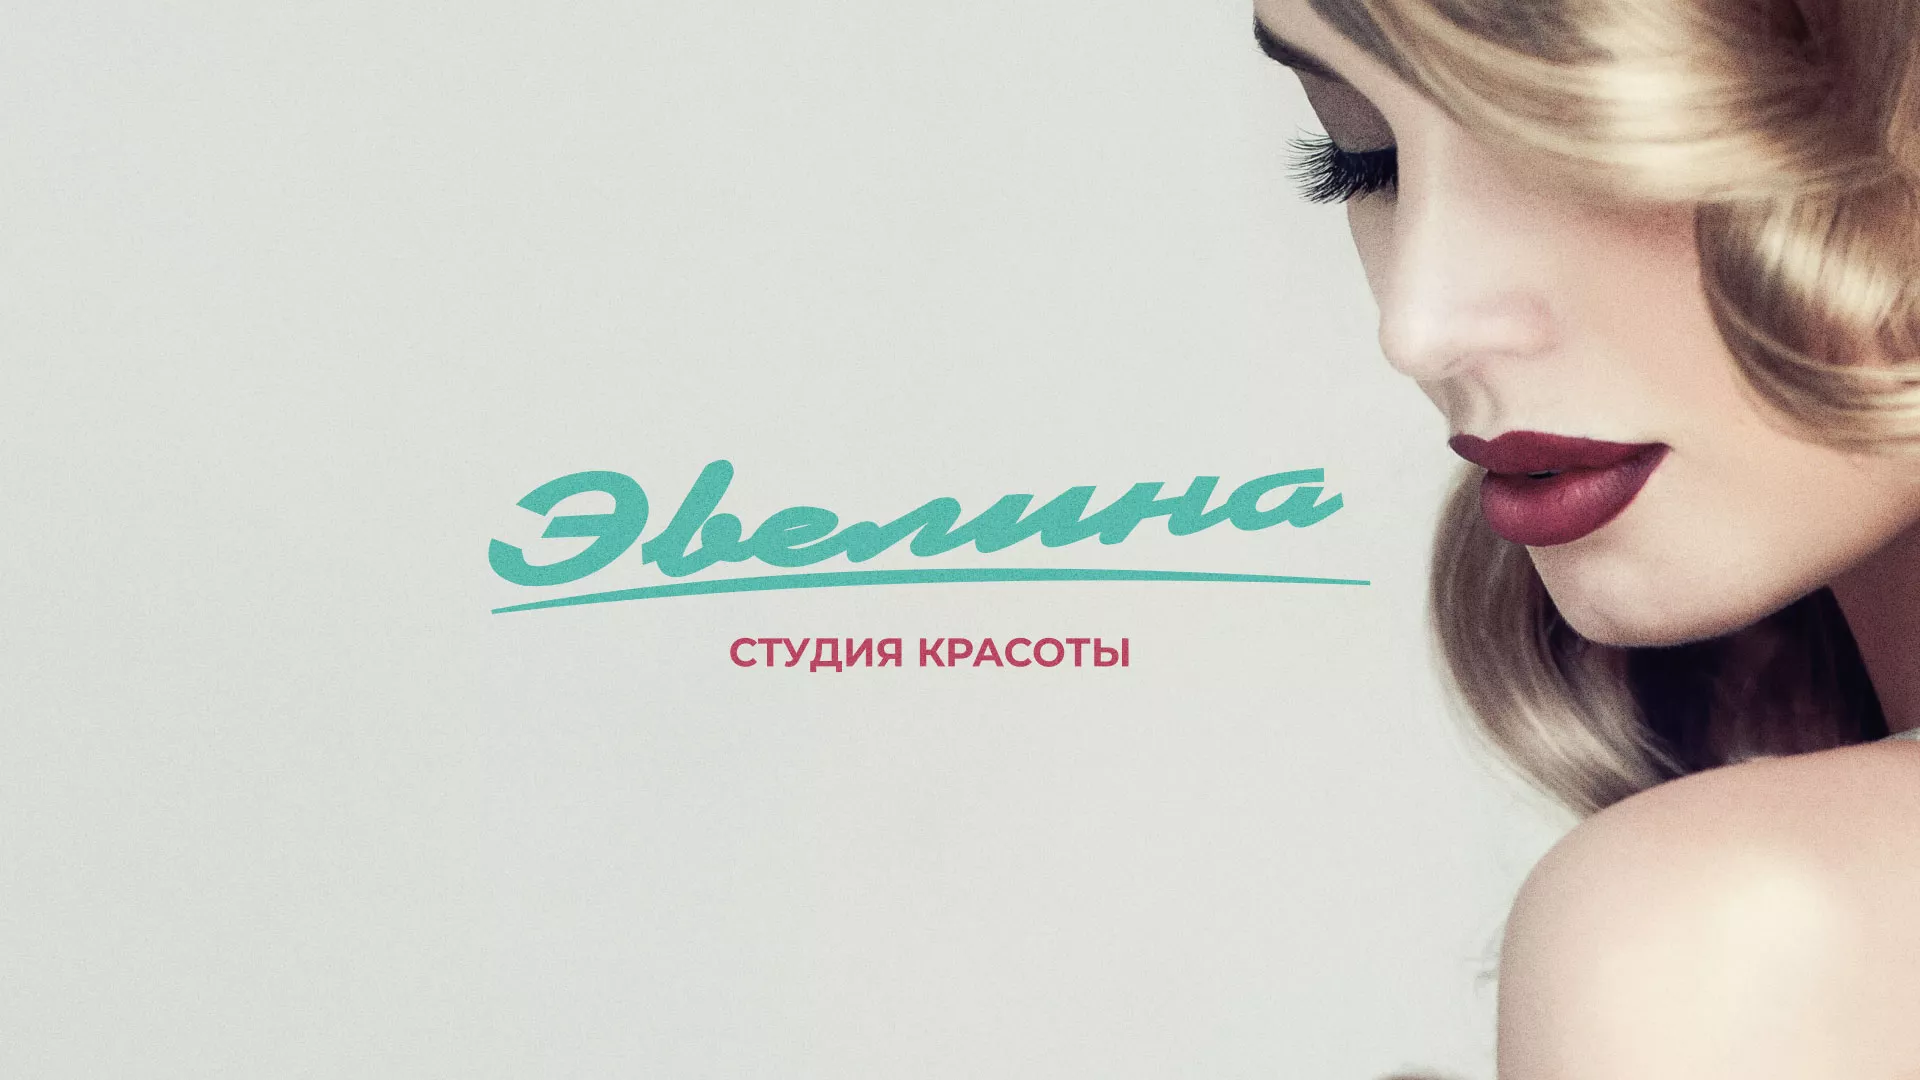 Разработка сайта для салона красоты «Эвелина» в Челябинске